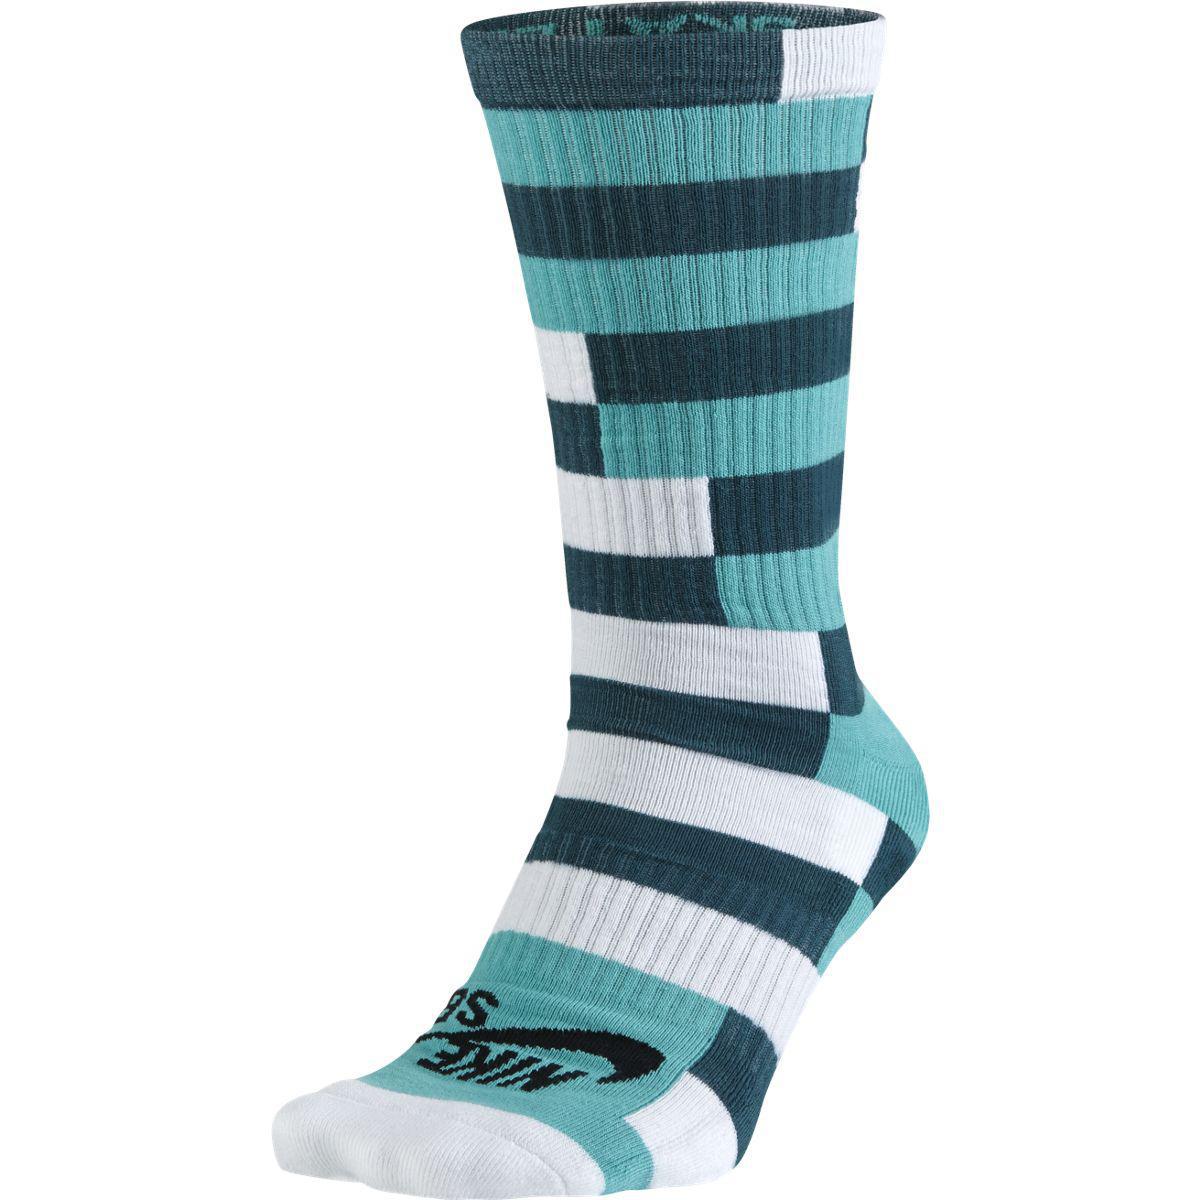 Nike SB Dri-FIT Striped Crew Socks (1 Pair) - Teal/Light Retro ...